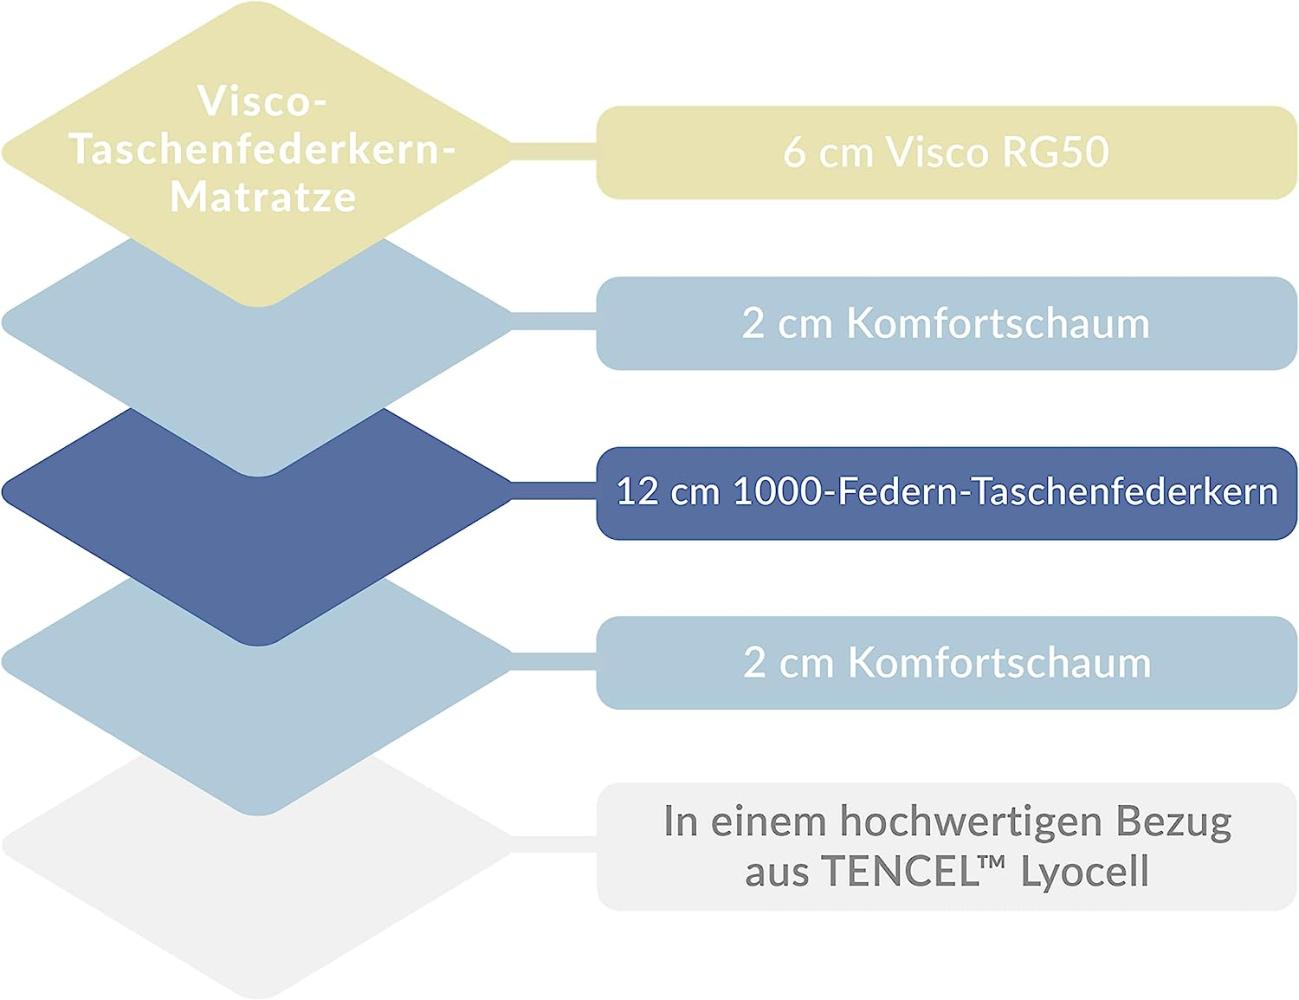 AM Qualitätsmatratzen 'Visco-Taschenfederkernmatratze' H2, 180 x 200 cm Bild 1